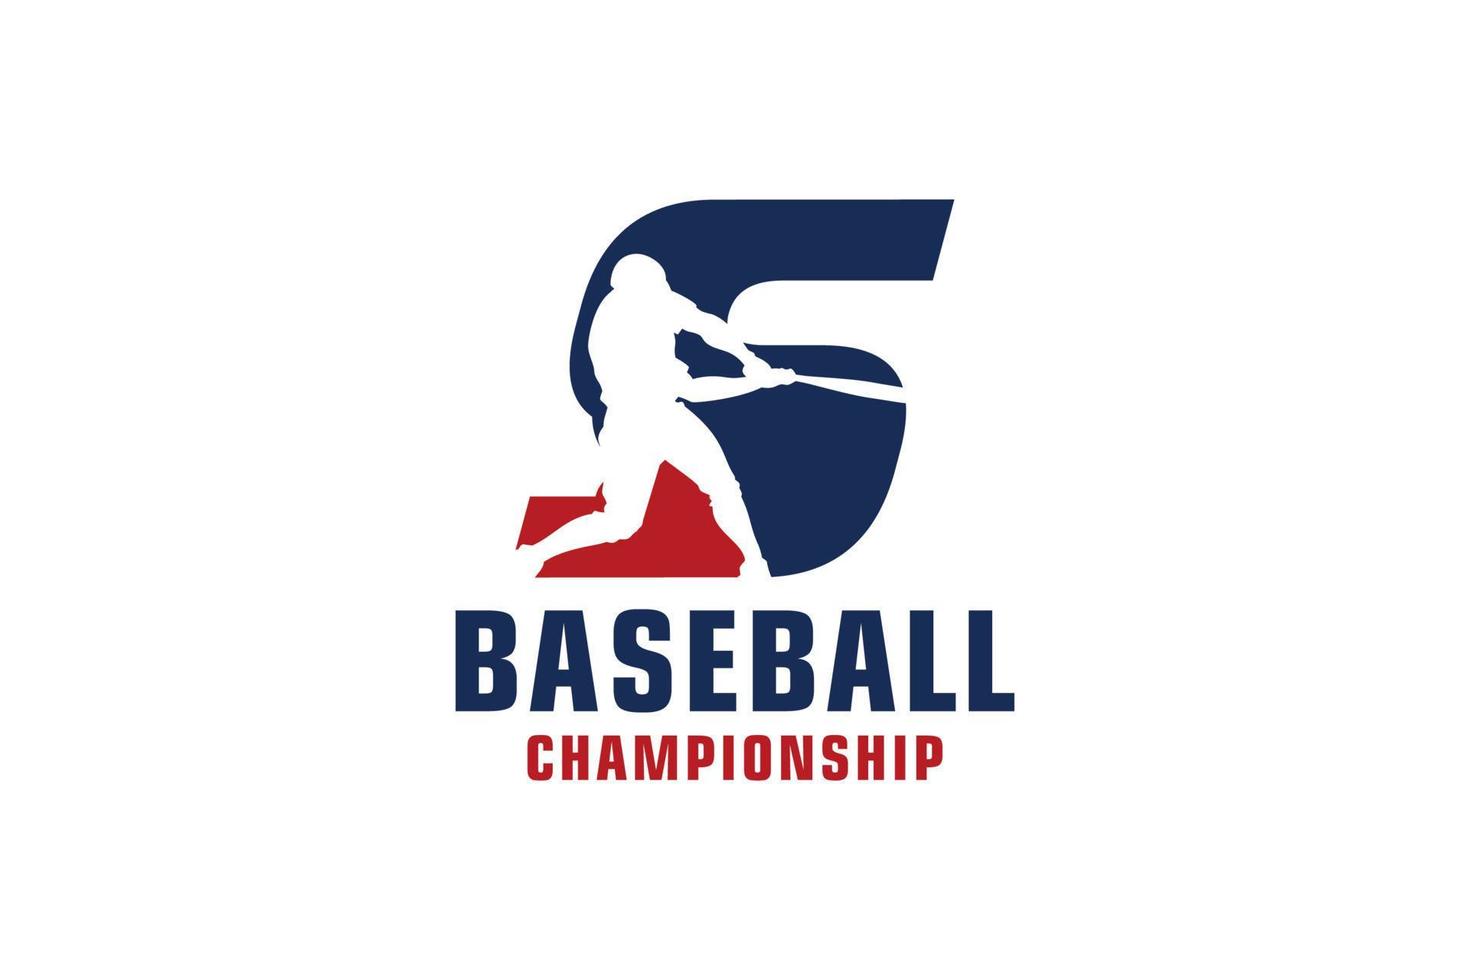 bokstaven s med baseball logotyp design. vektor designmallelement för sportlag eller företagsidentitet.